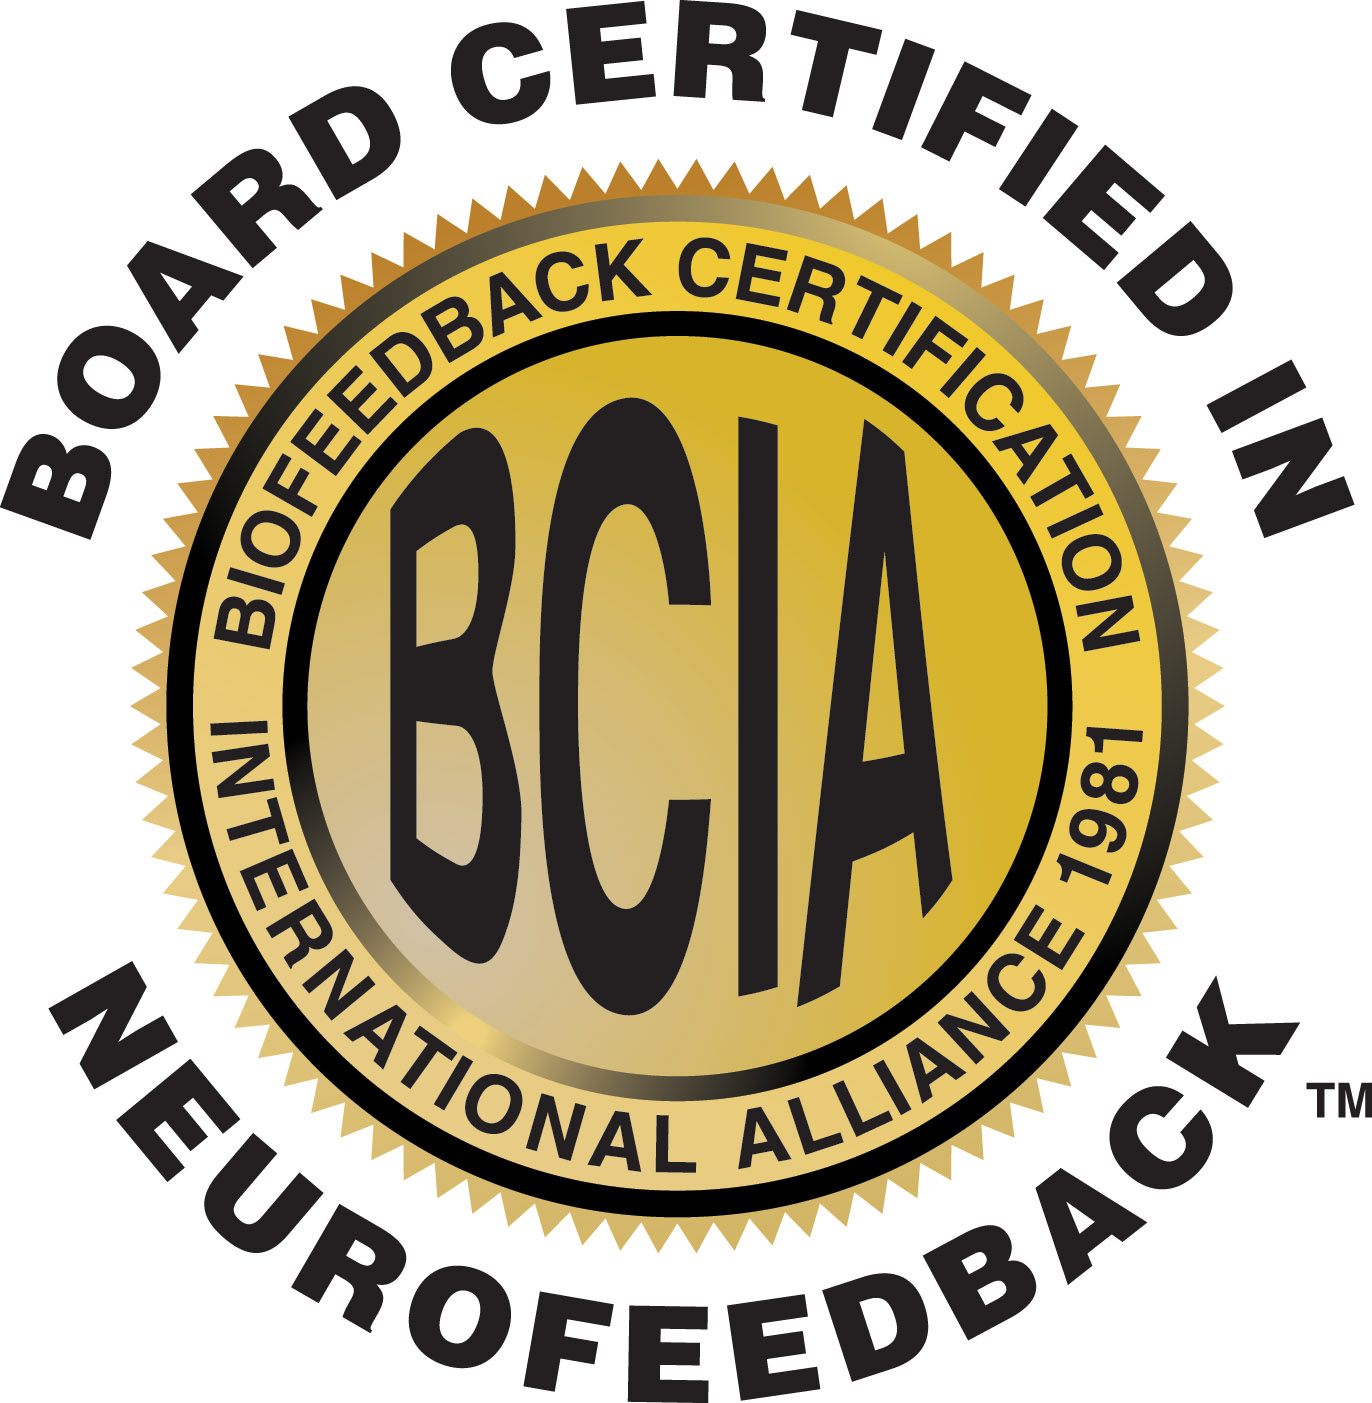 BCIA BoardCertifiedInNeurofeedback Gold1